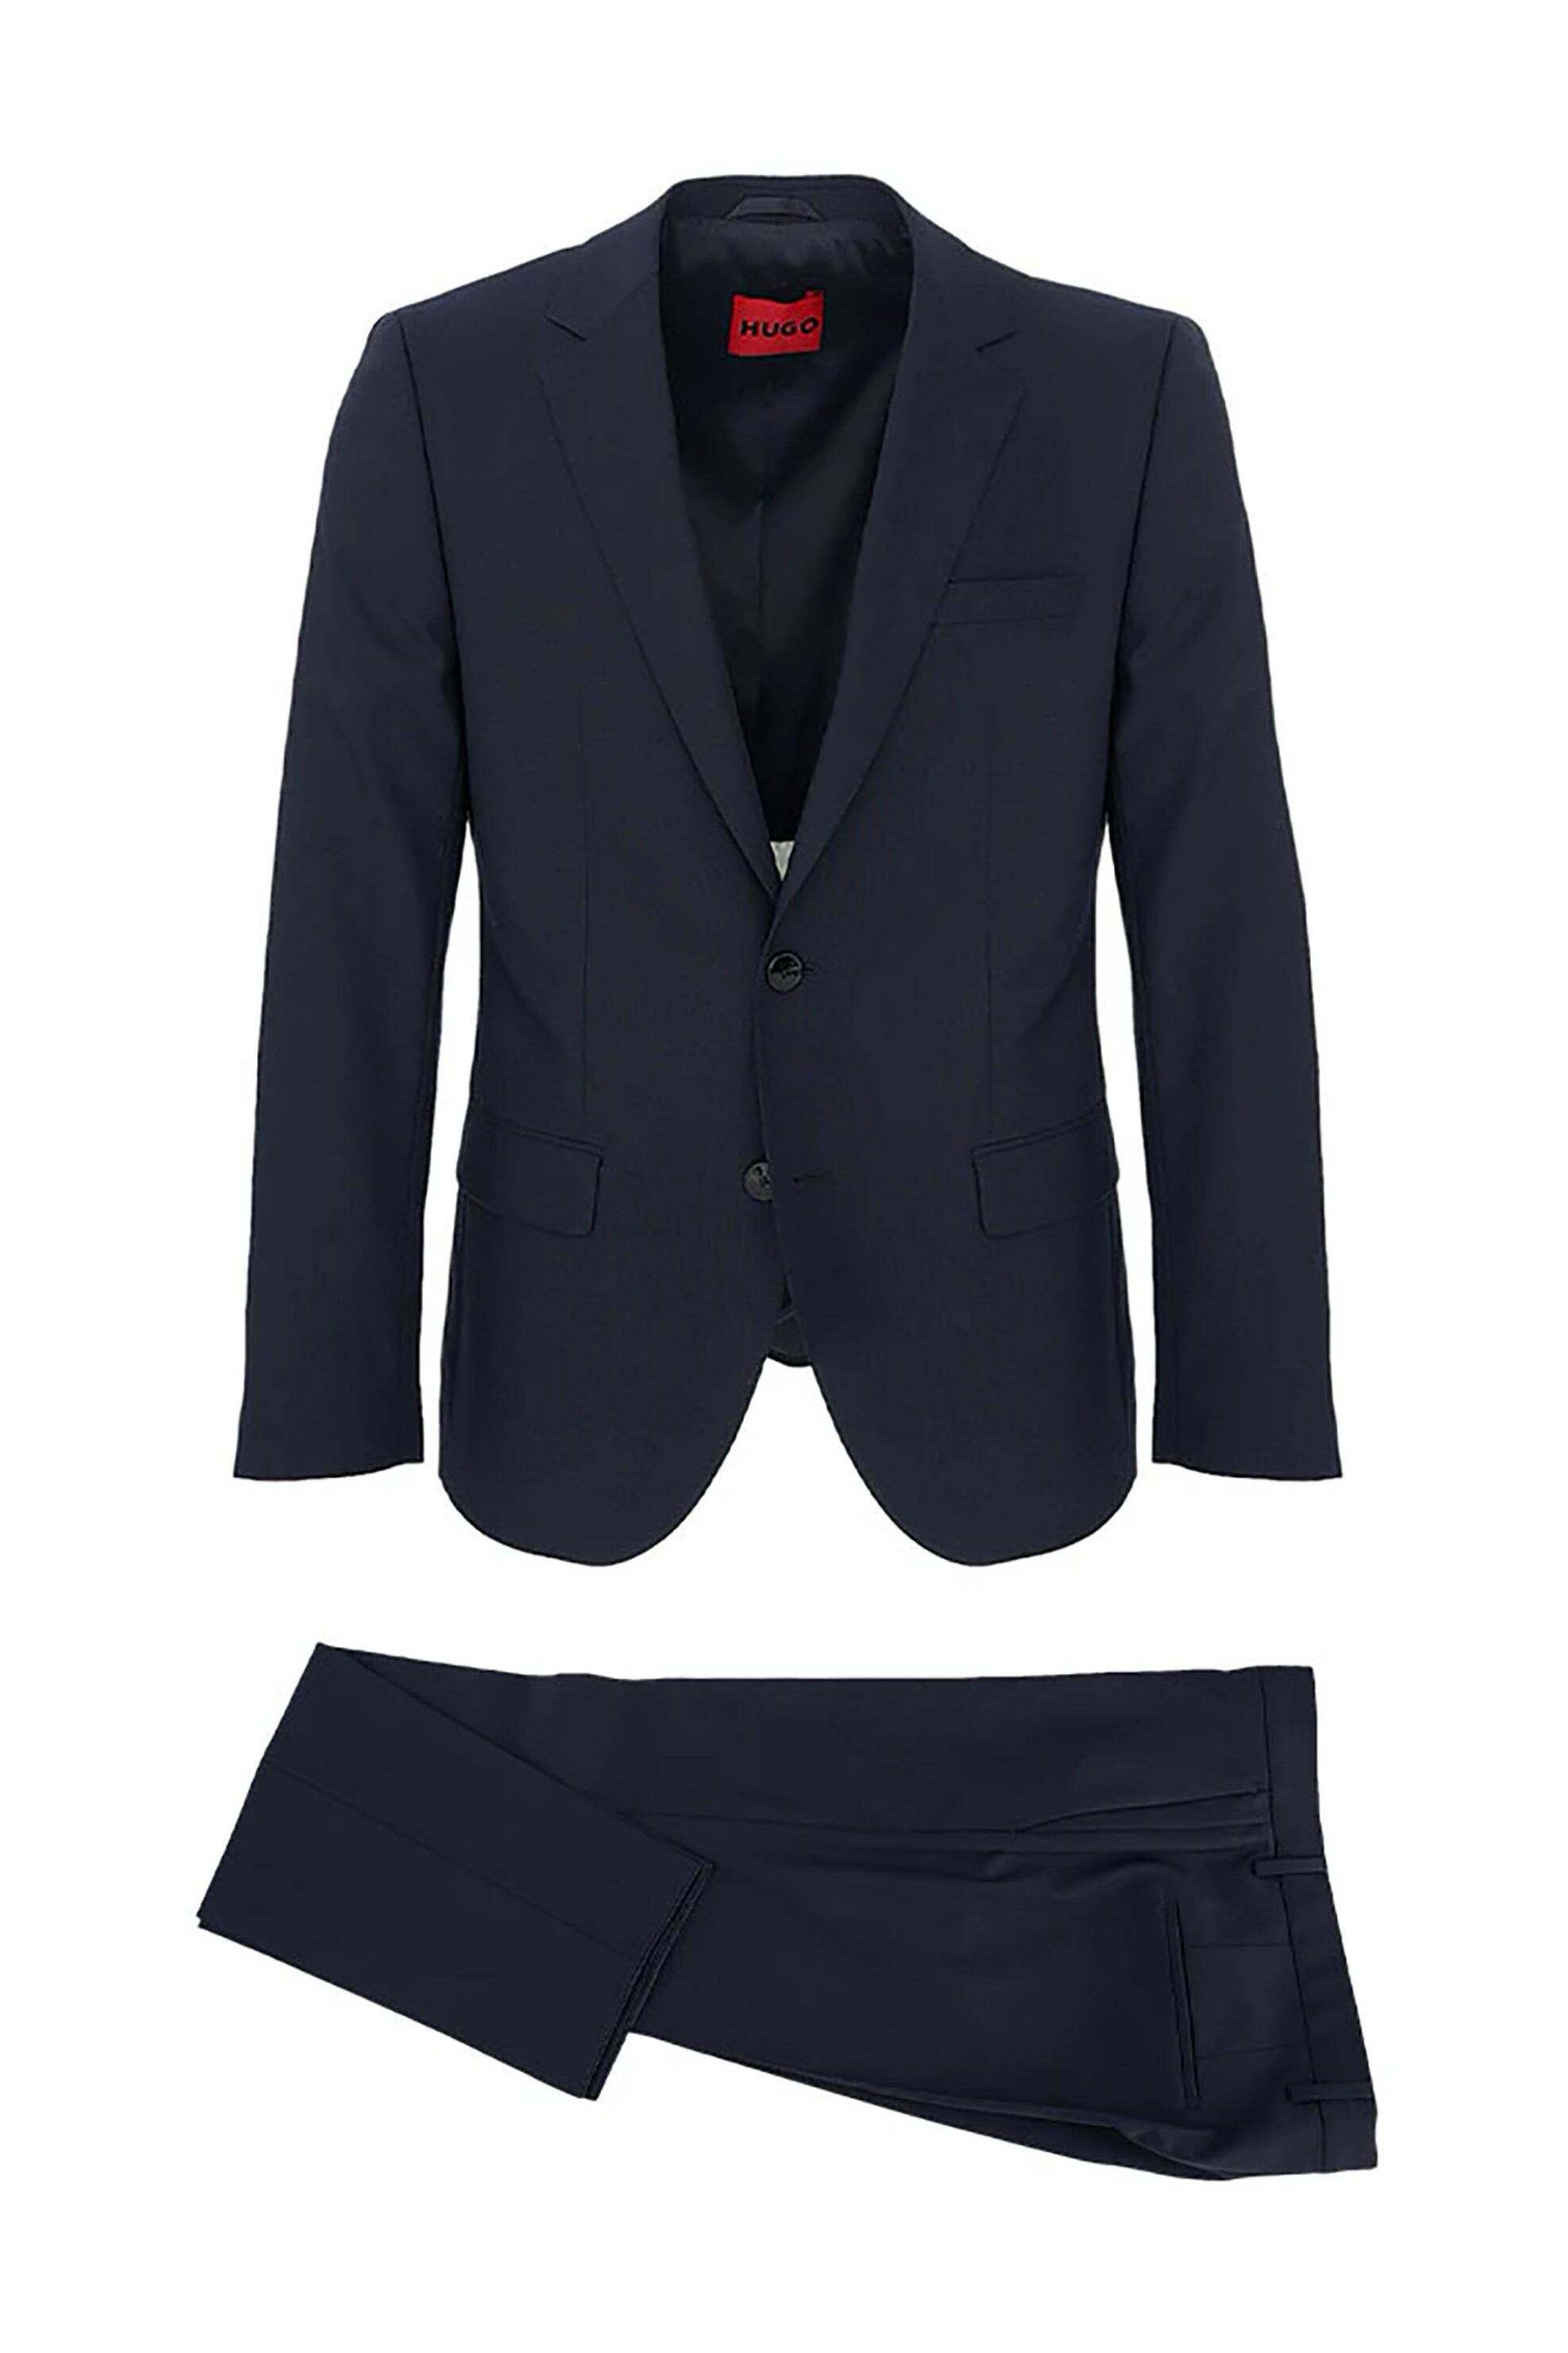 Ανδρική Μόδα > Ανδρικά Ρούχα > Ανδρικά Κοστούμια Hugo Boss ανδρικό κοστούμι Slim Fit - 50500239 Μπλε Σκούρο